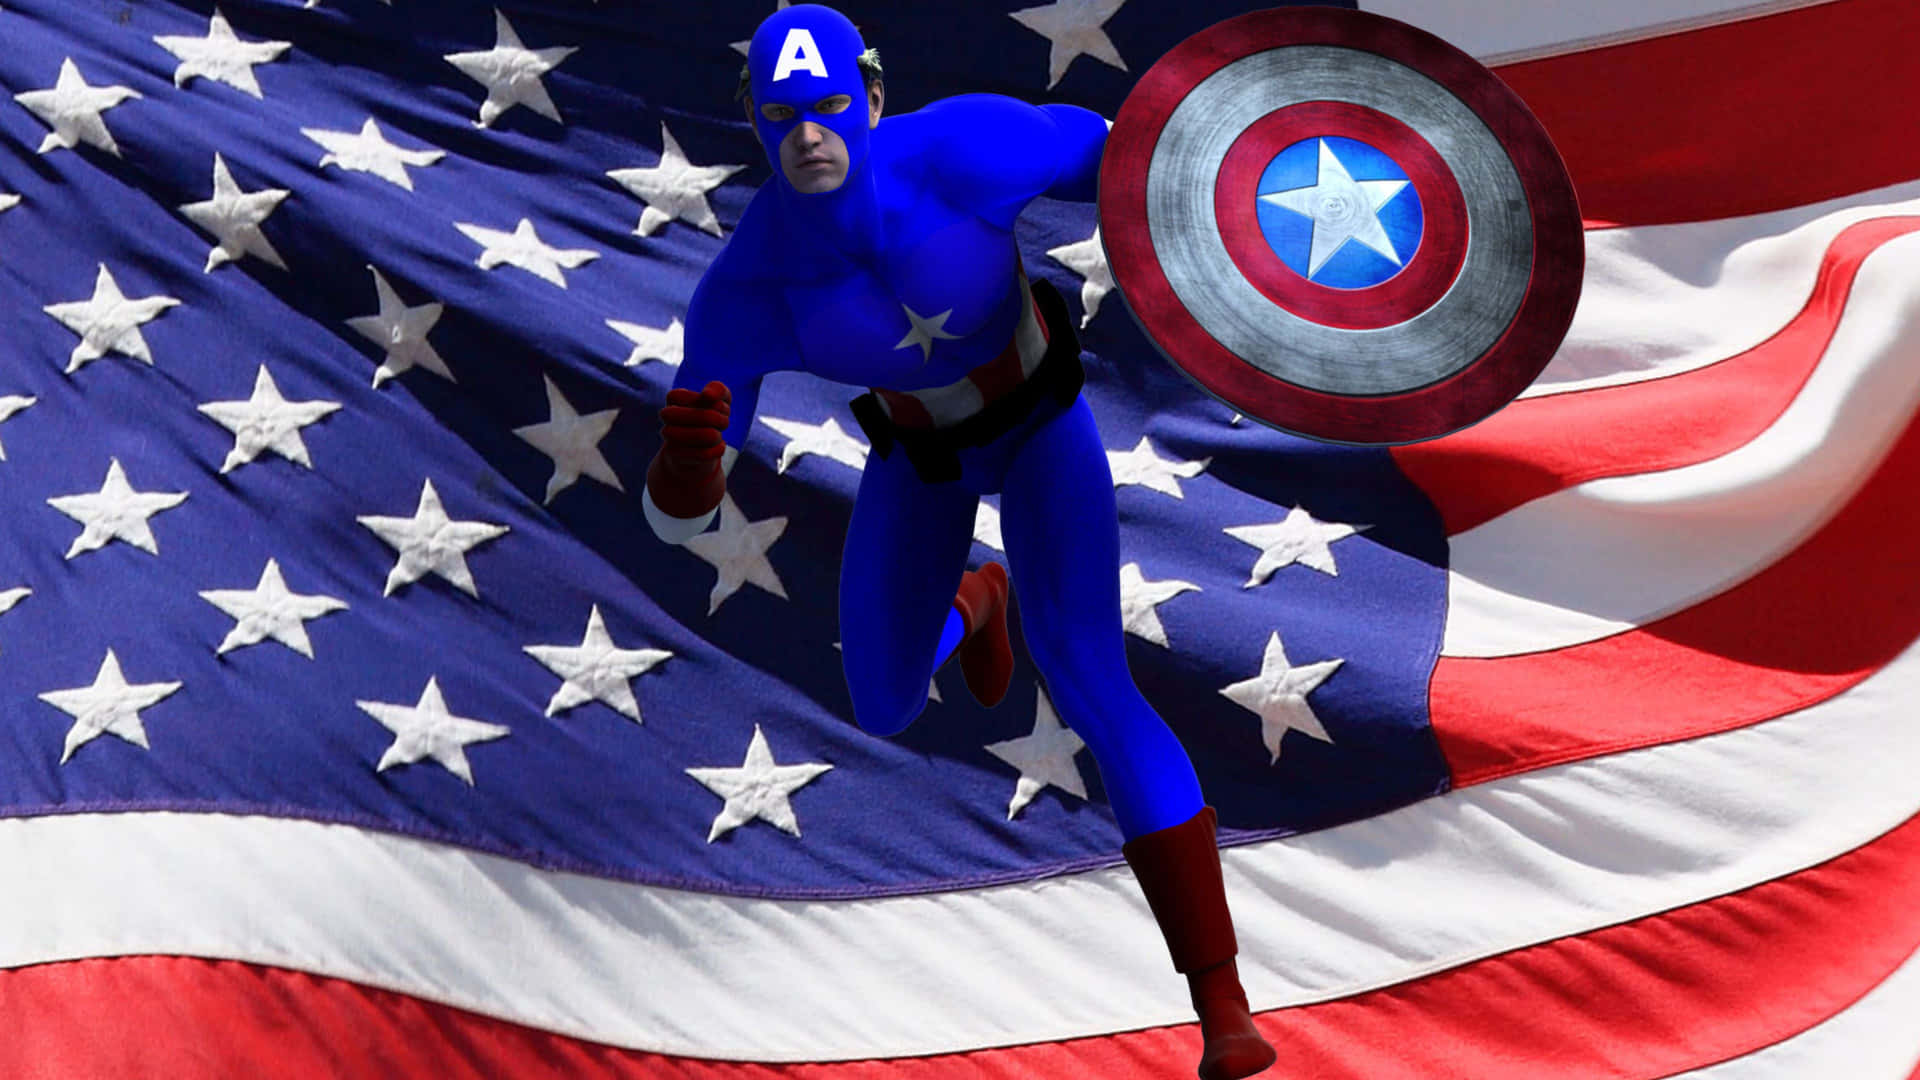 Derheldenhafte Captain America In Einer Ikonischen Kampfszene.